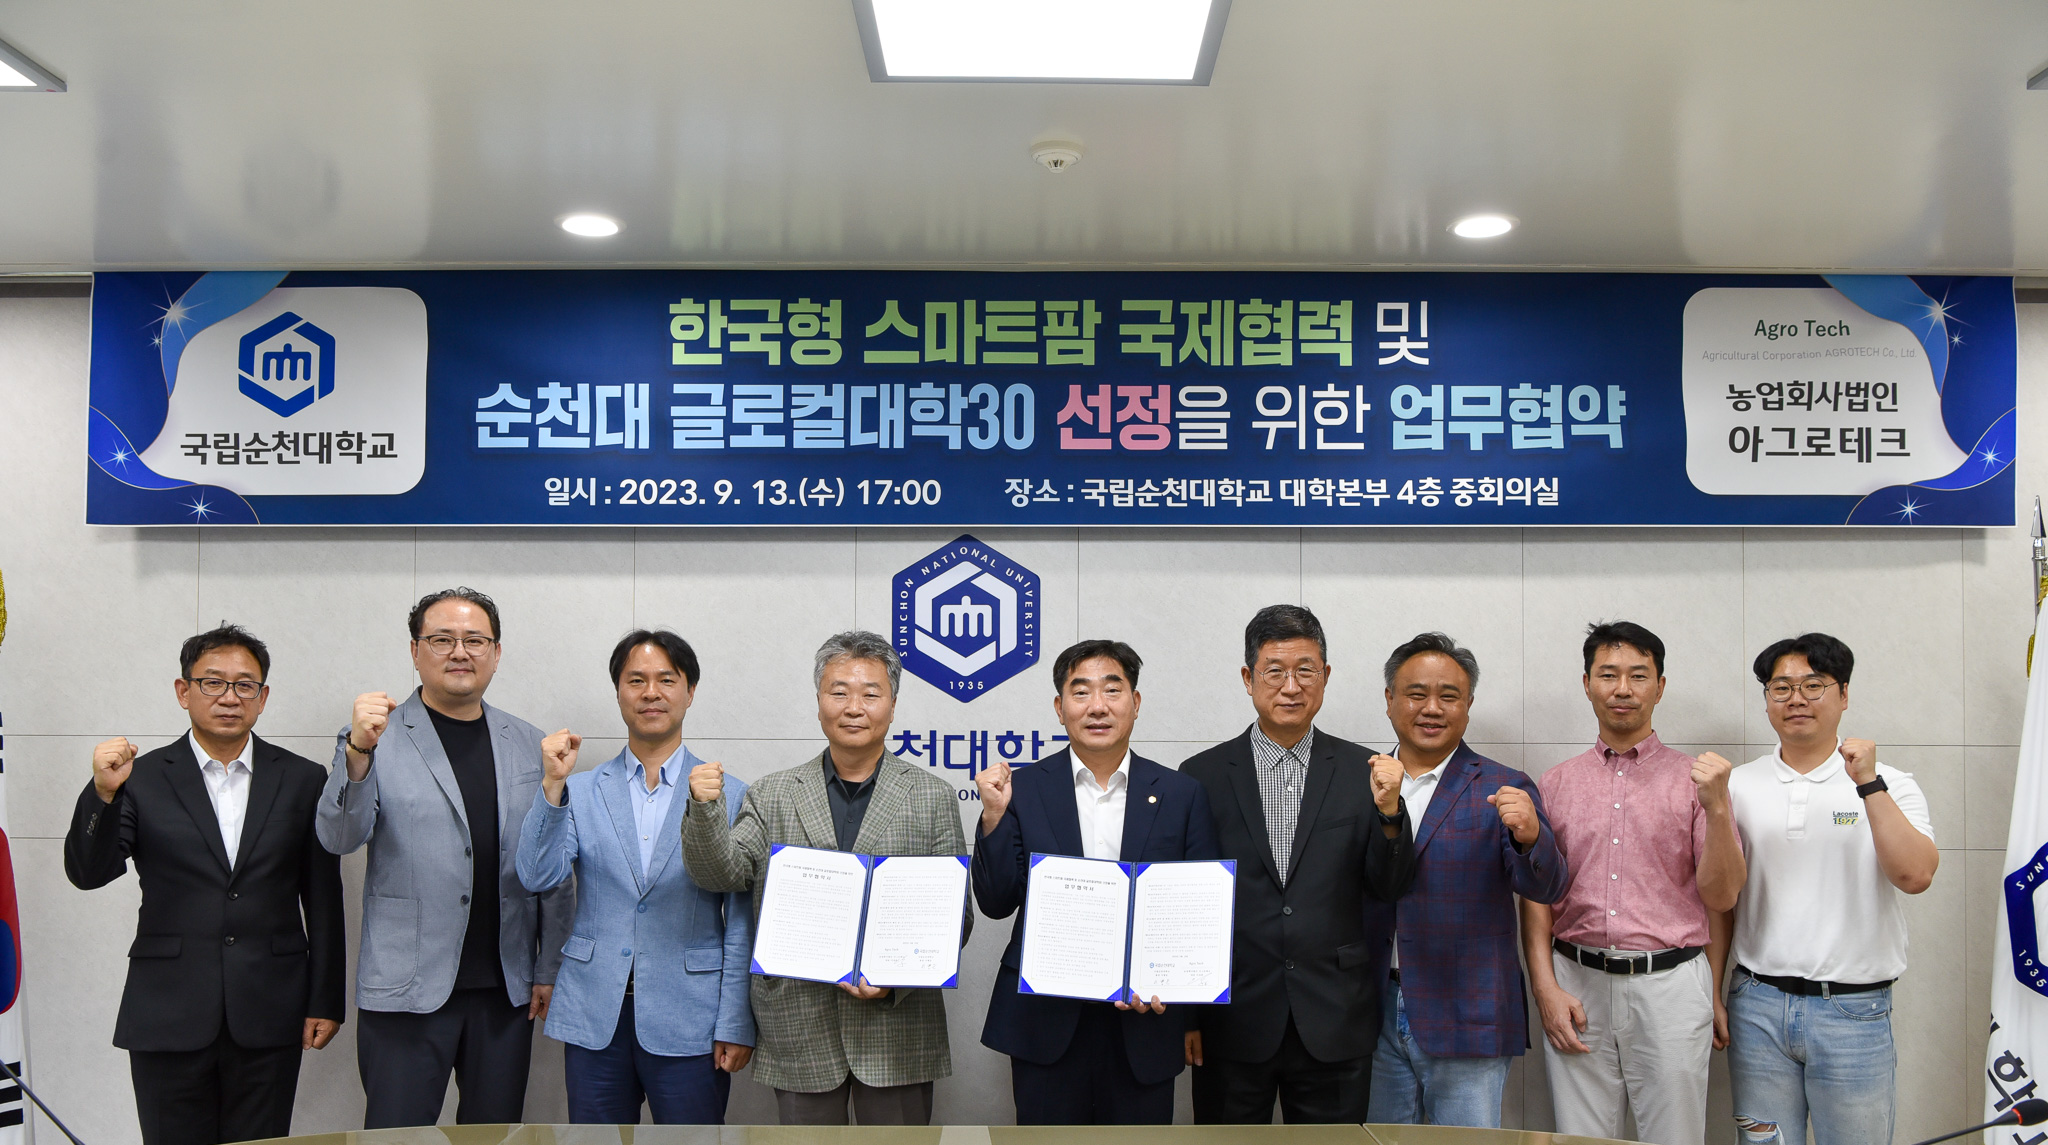 글로벌 농업회사법인 아그로테크와 ‘한국형 스마트팜 국제협력’을 위한 업무협약 체결 상세정보 페이지로 이동하기